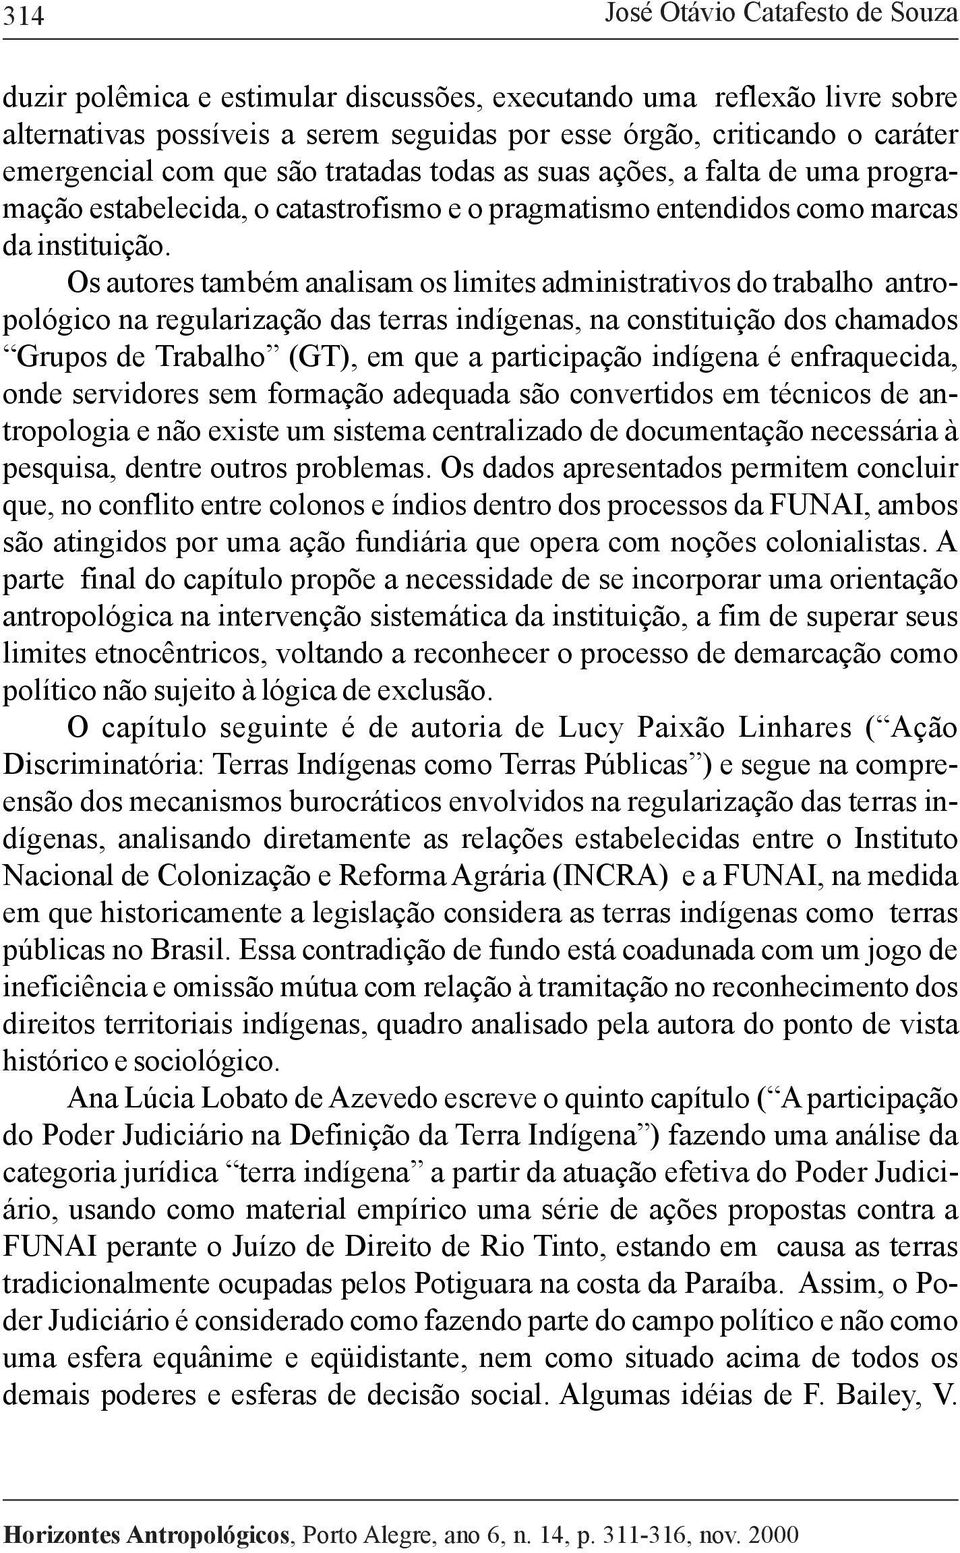 Os autores também analisam os limites administrativos do trabalho antropológico na regularização das terras indígenas, na constituição dos chamados Grupos de Trabalho (GT), em que a participação